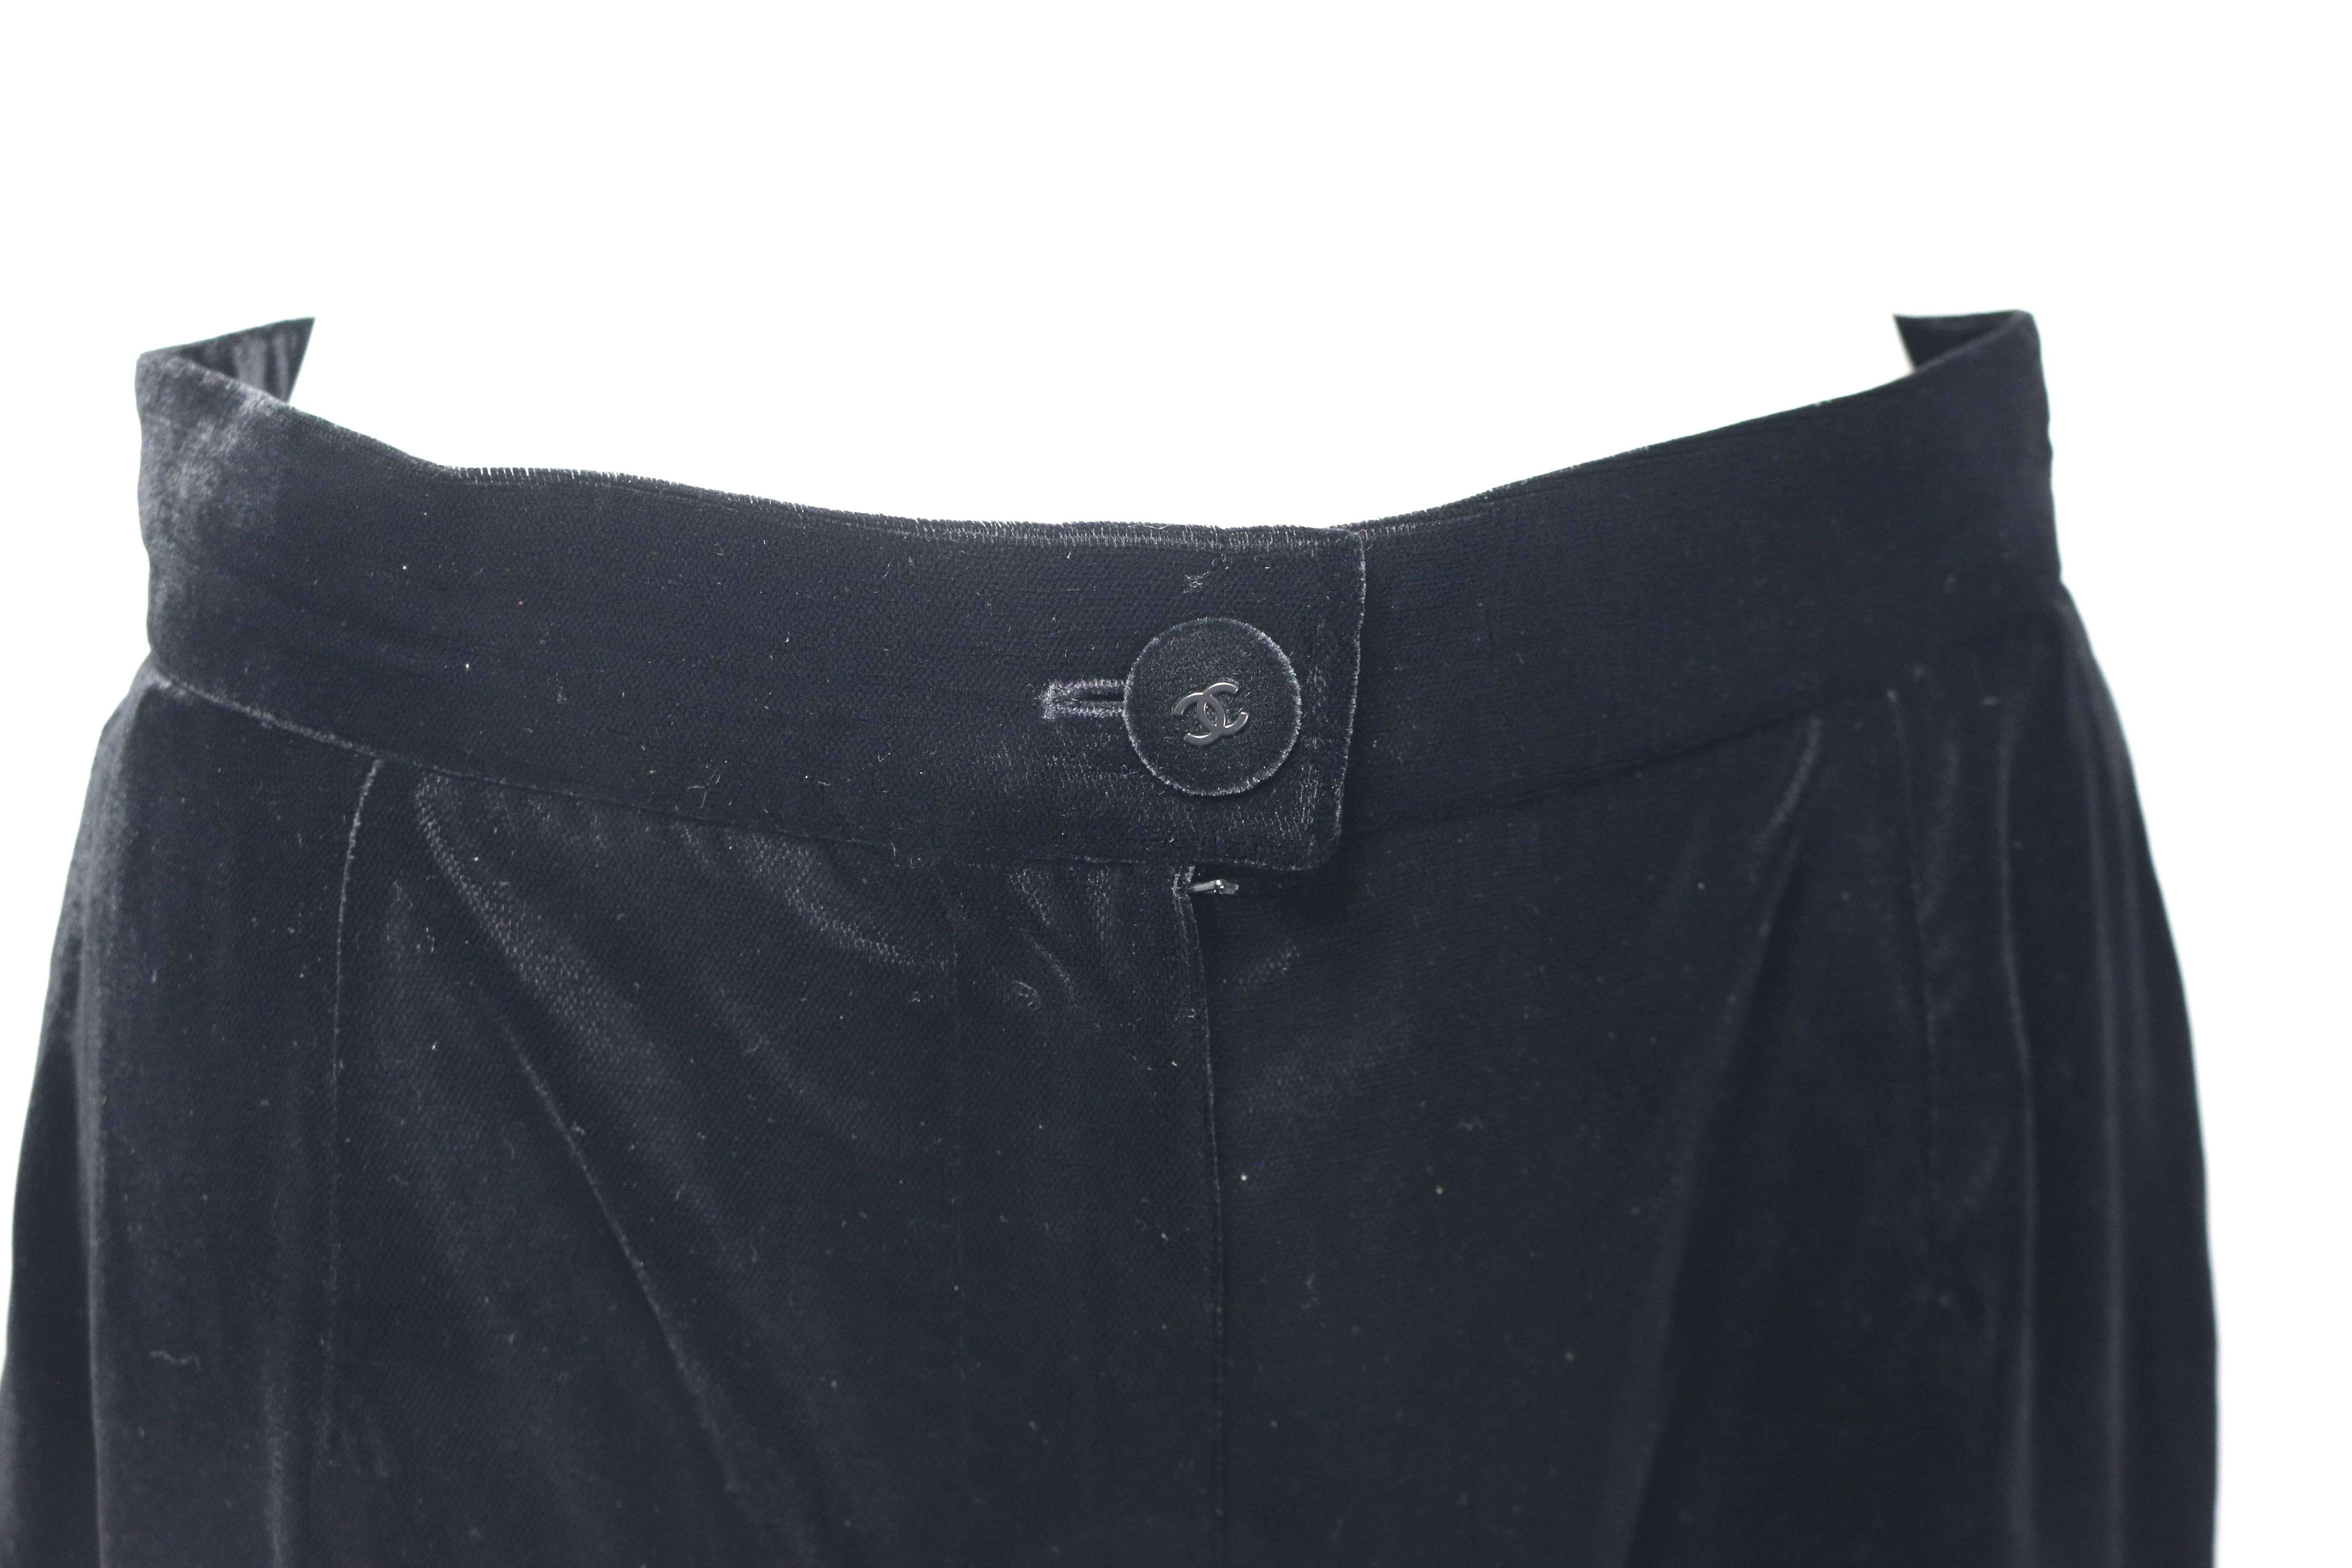 - Pantalon vintage Chanel en velours noir de la collection A/W 1998. 

- Coupe de jambes sauvages. 

- Fermeture par bouton 